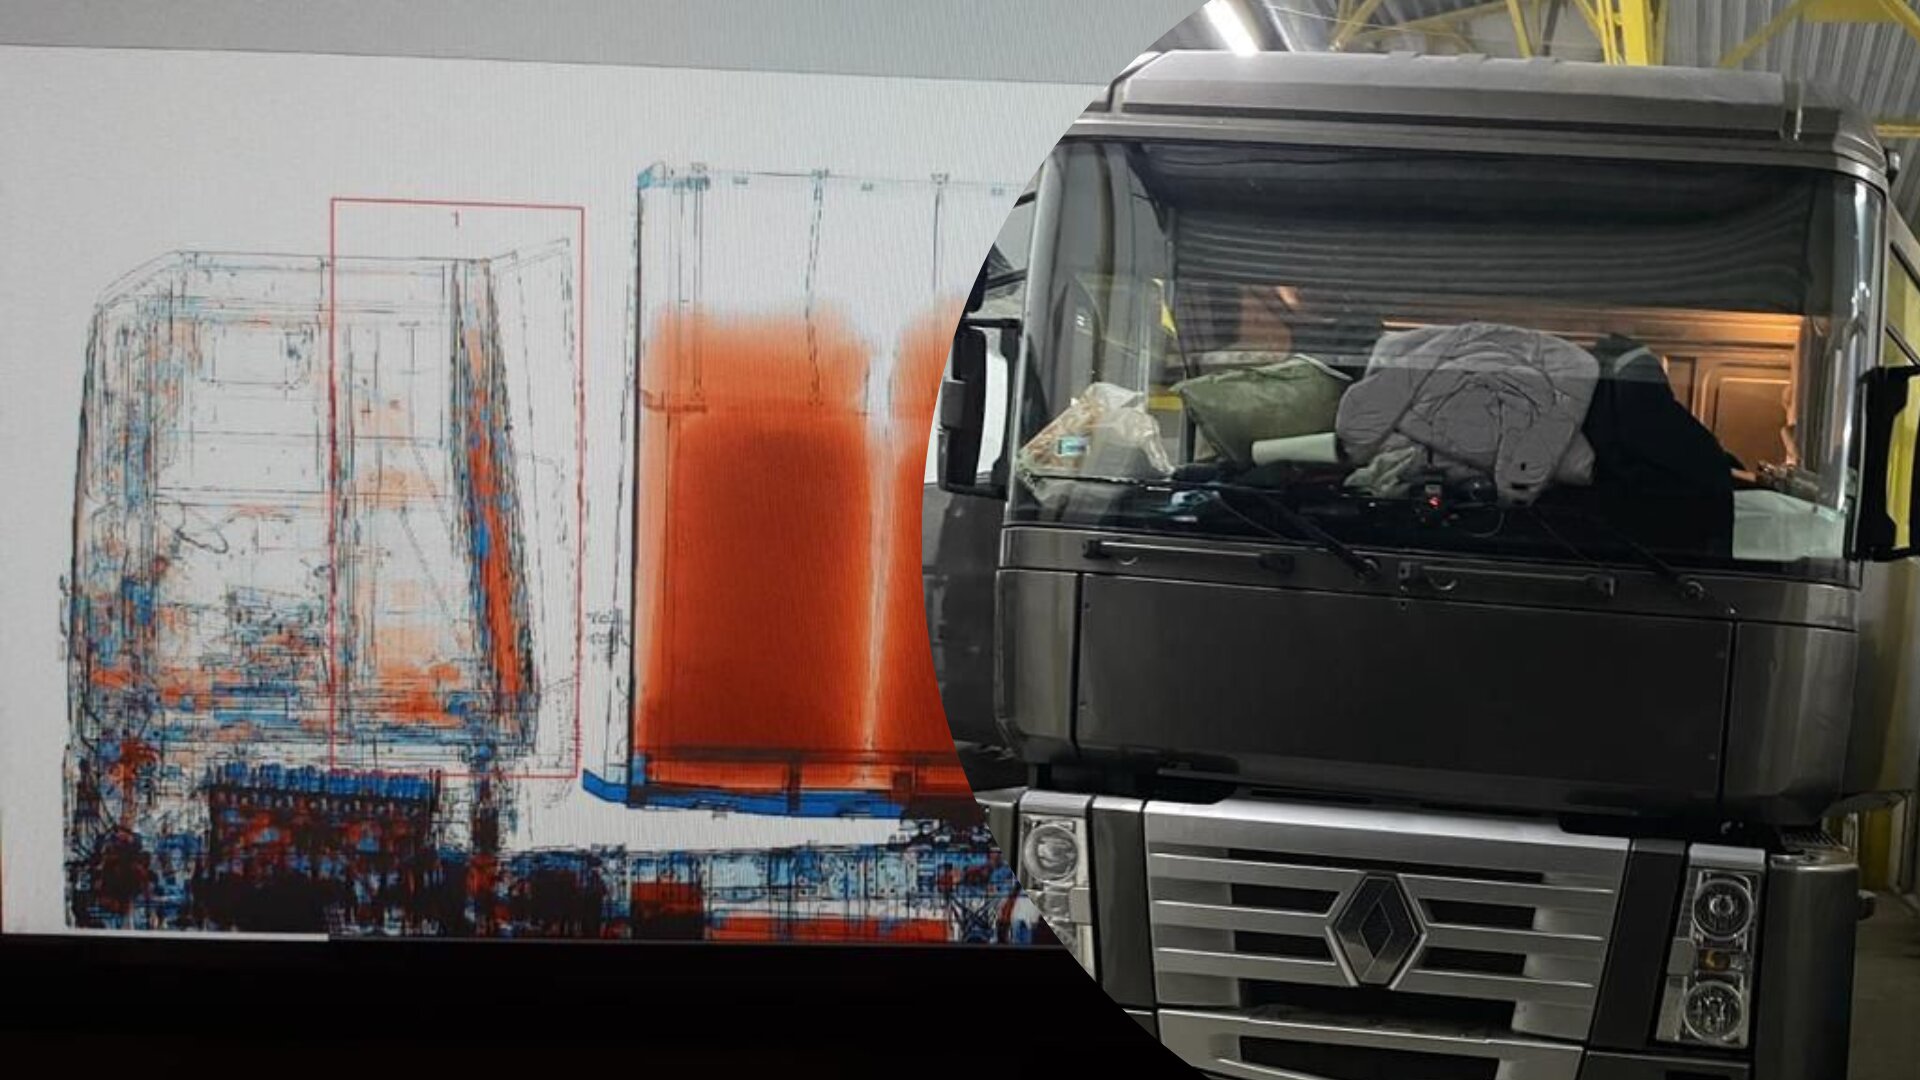 Вчора ввечері, 10 грудня, на митний пост «Тиса» Закарпатської митниці заїхав вантажний автомобіль марки «Рено» під керуванням гр.України. 